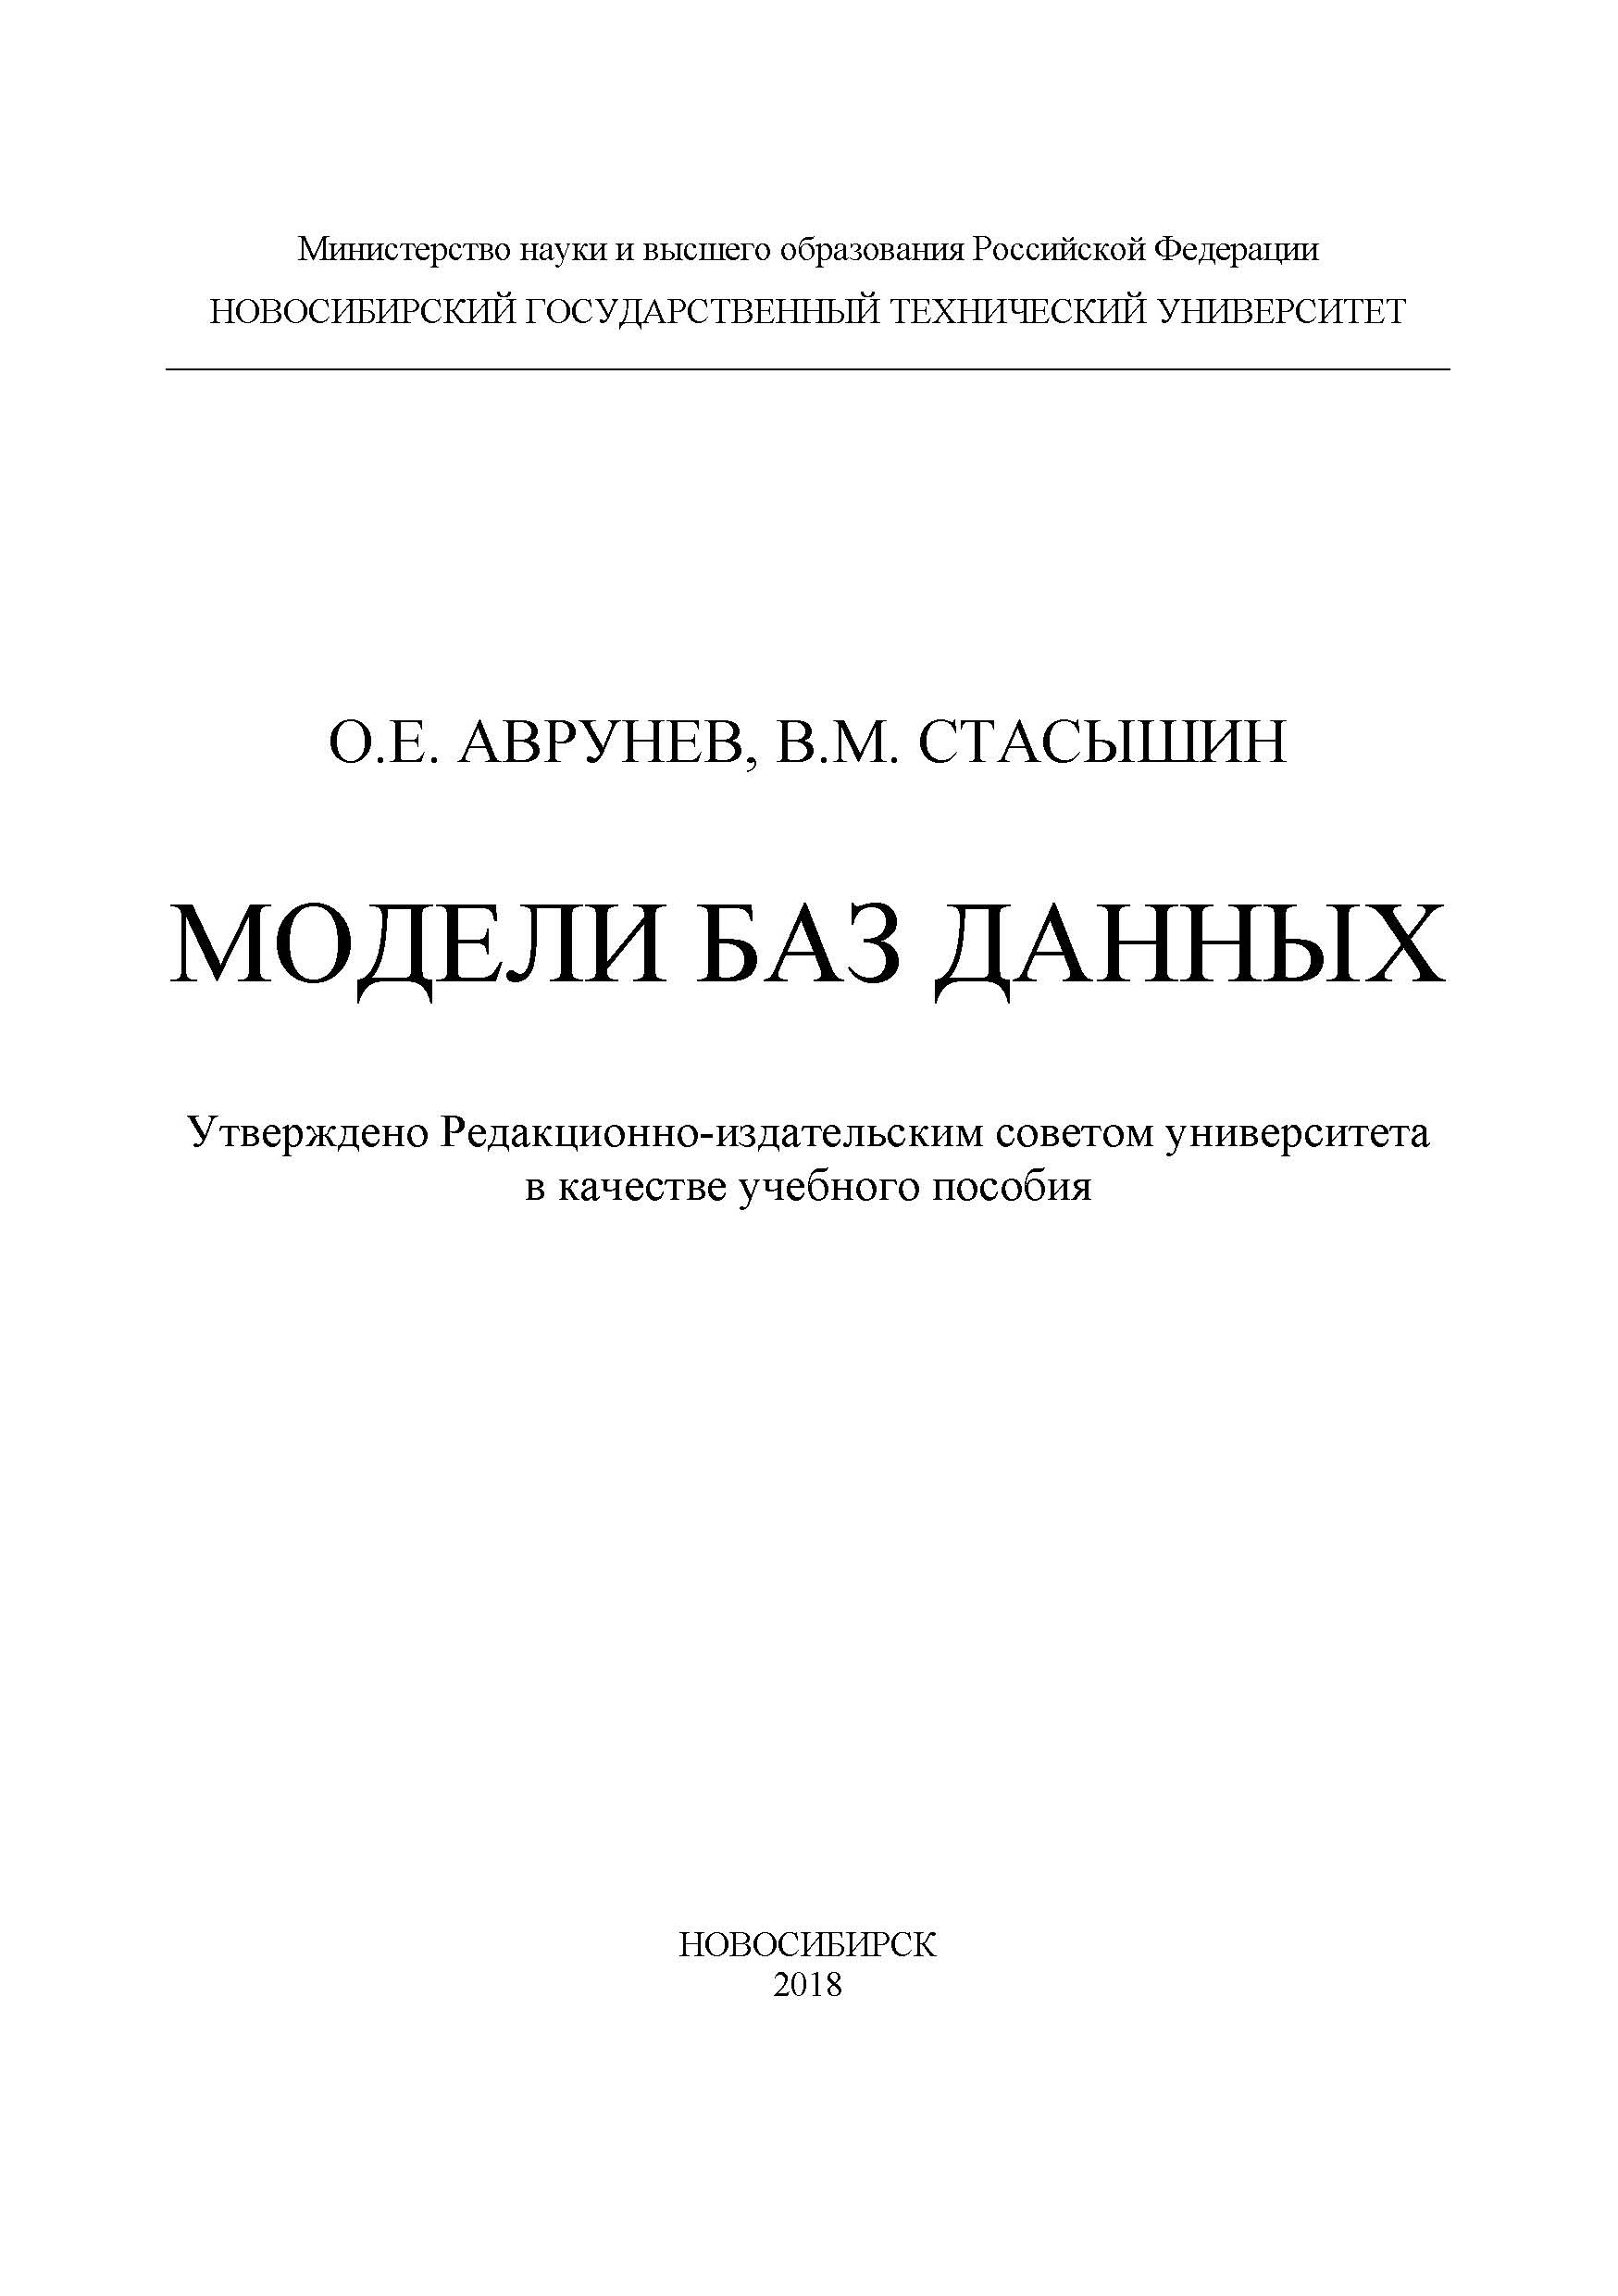 Книга  Модели баз данных созданная О. Е. Аврунев, В. М. Стасышин может относится к жанру базы данных, учебники и пособия для вузов. Стоимость электронной книги Модели баз данных с идентификатором 48376872 составляет 169.00 руб.